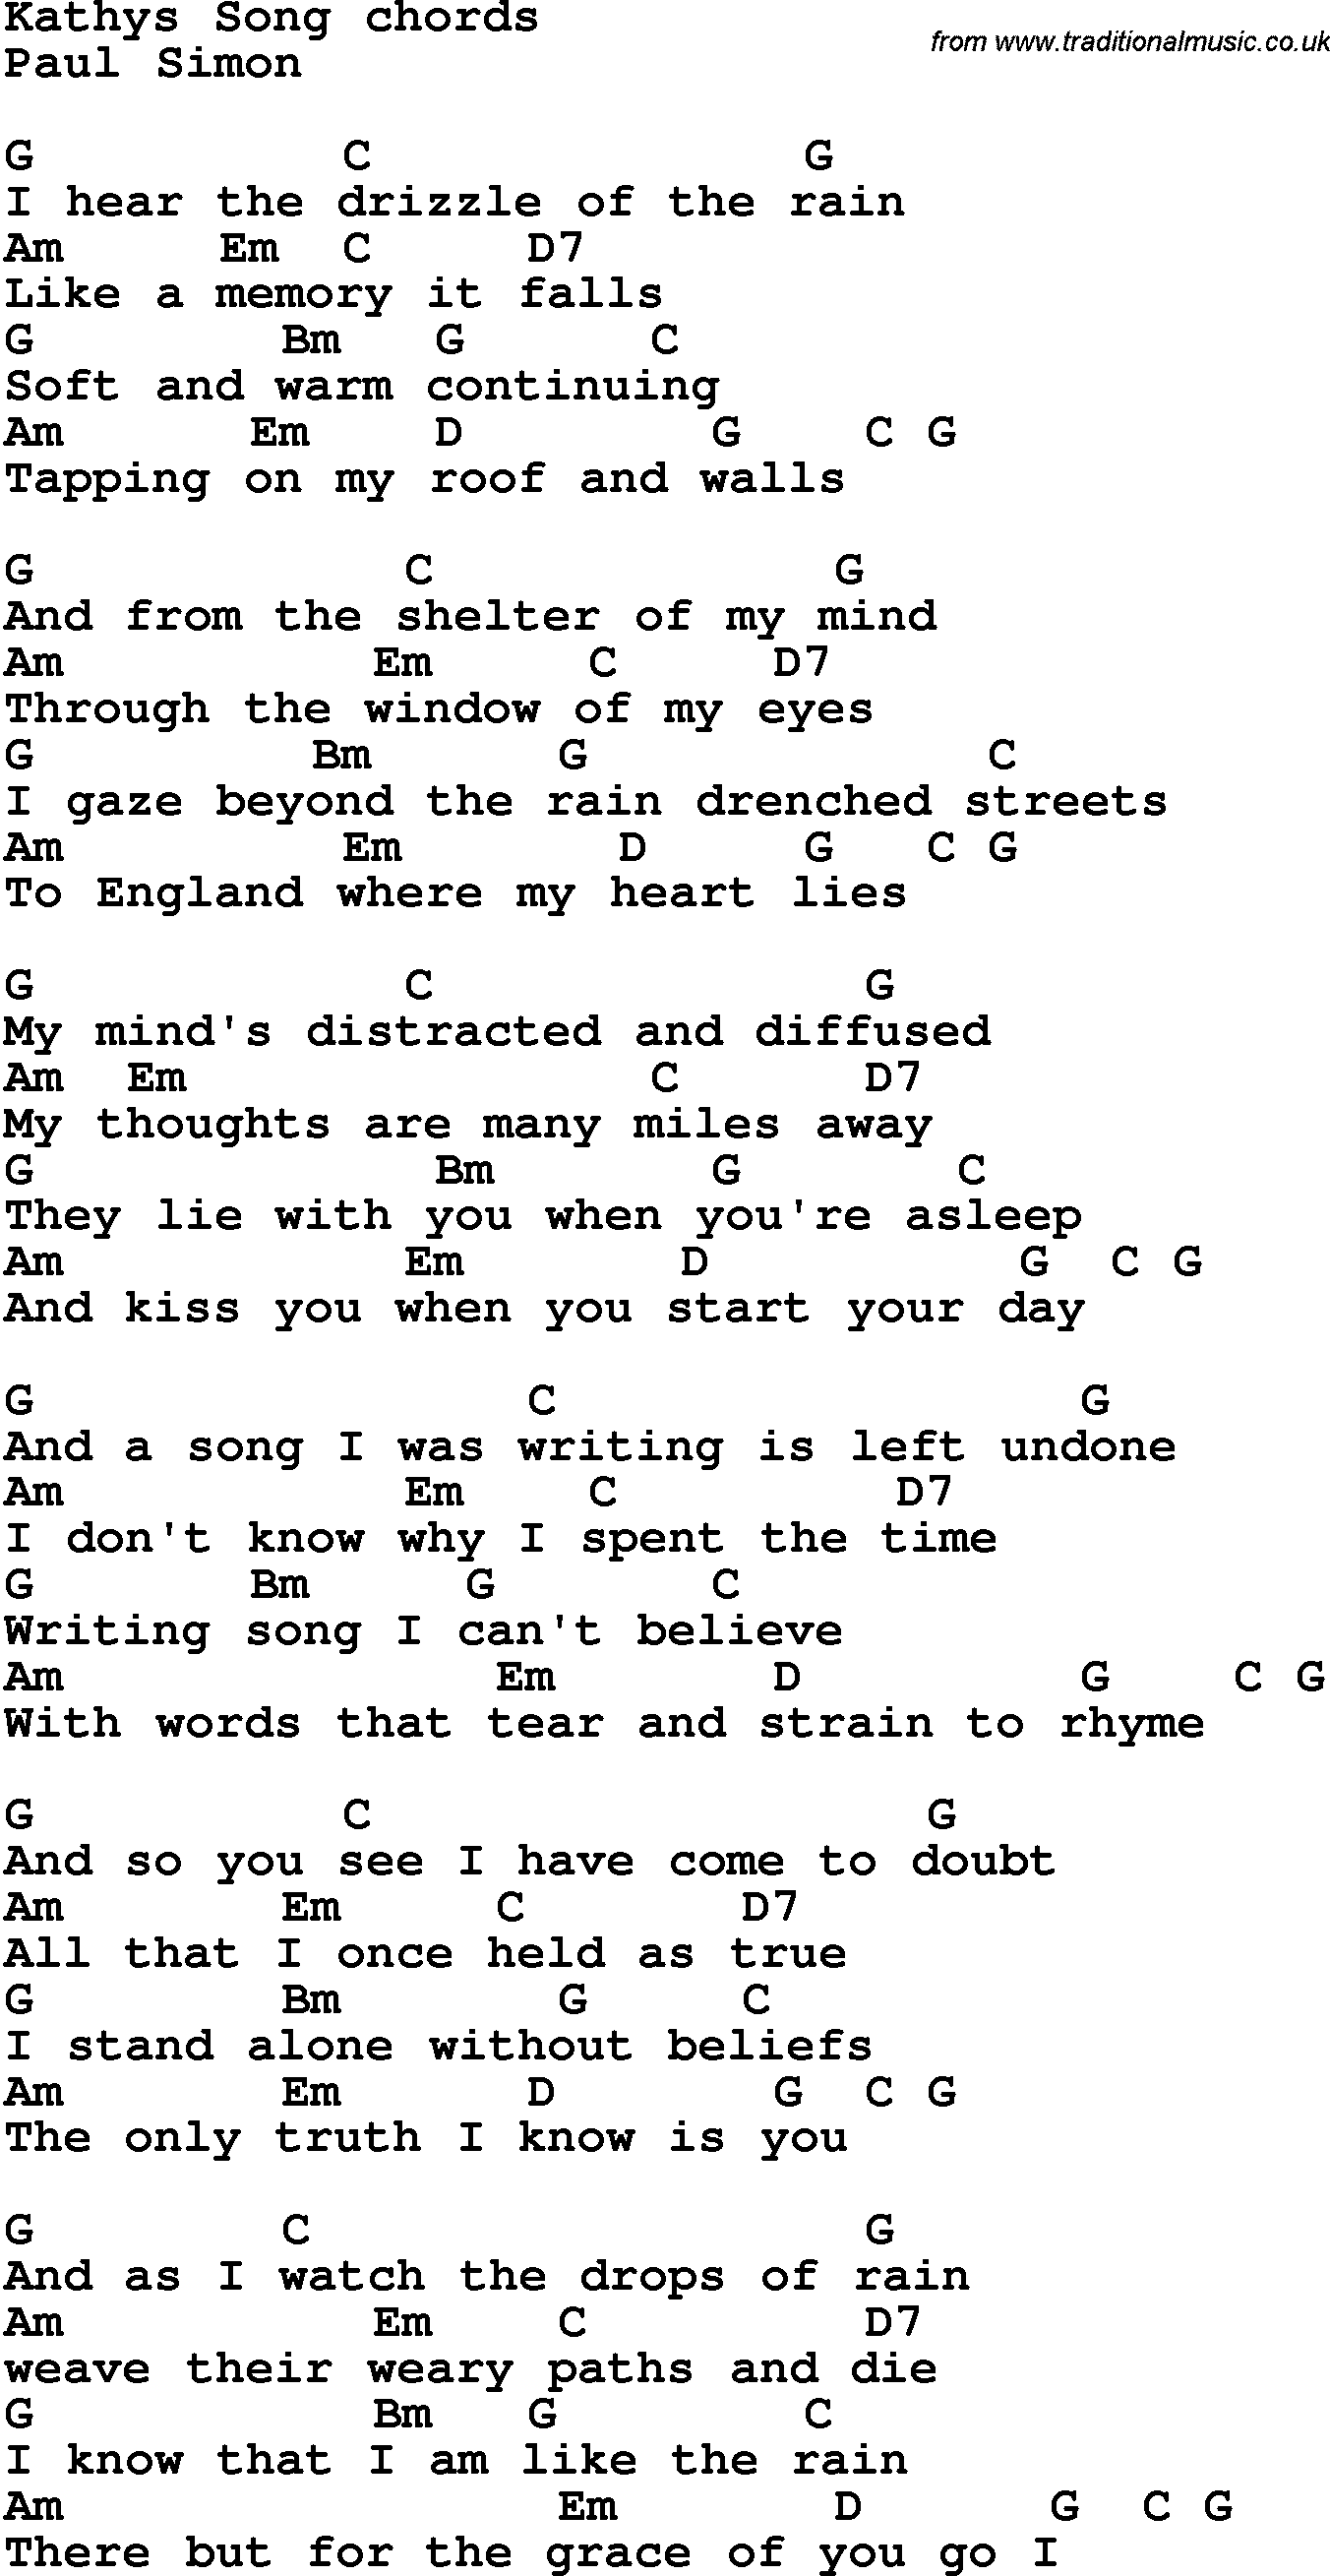 som resultat udtale ude af drift Song lyrics with guitar chords for Kathy's Song